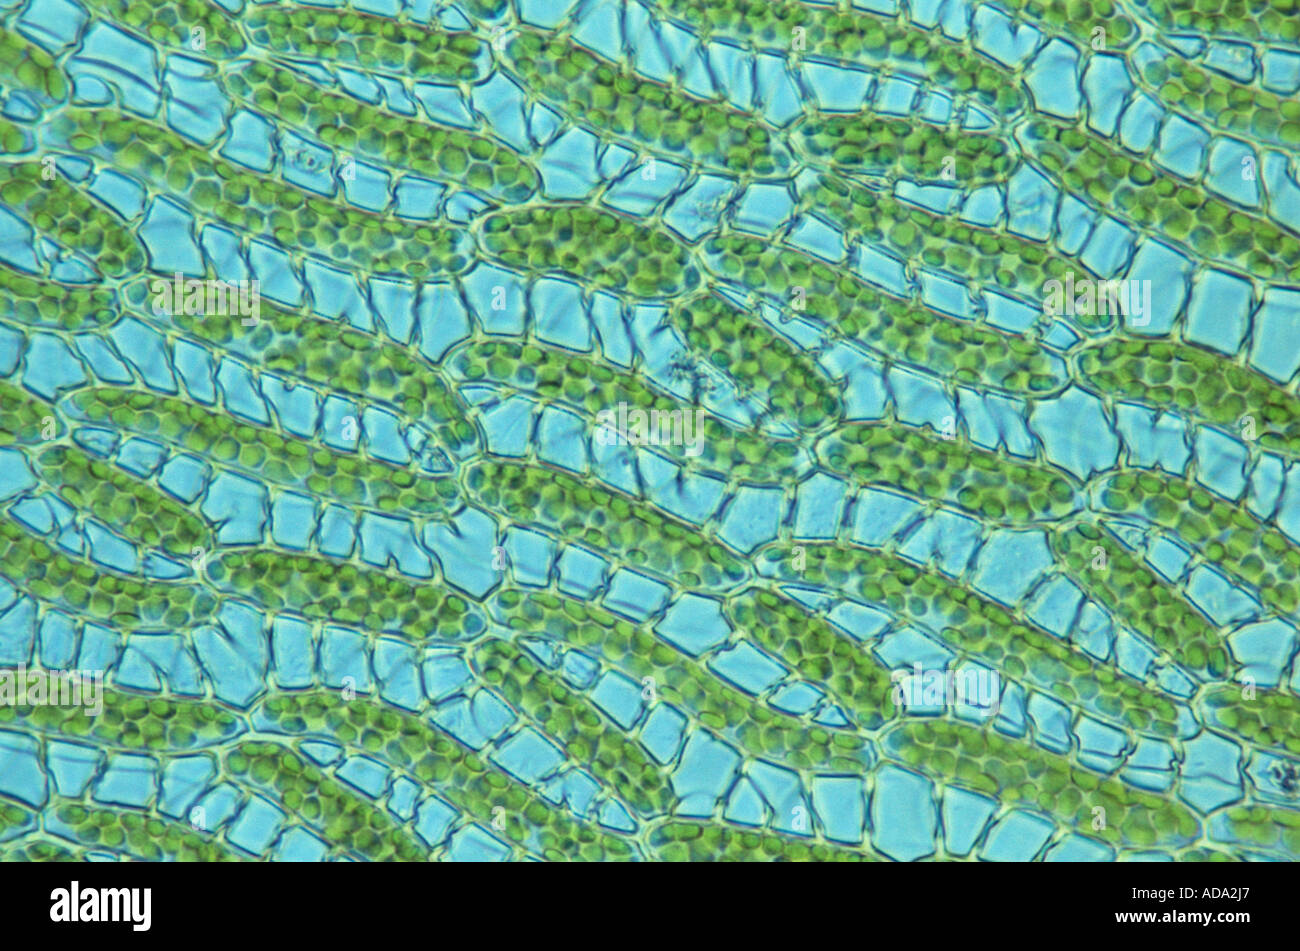 La tourbe de sphaigne (Sphagnum cuspidatum), section du système capillaire, coupe du tissu, agrandie, l'ALLEMAGNE, Basse-Saxe Banque D'Images